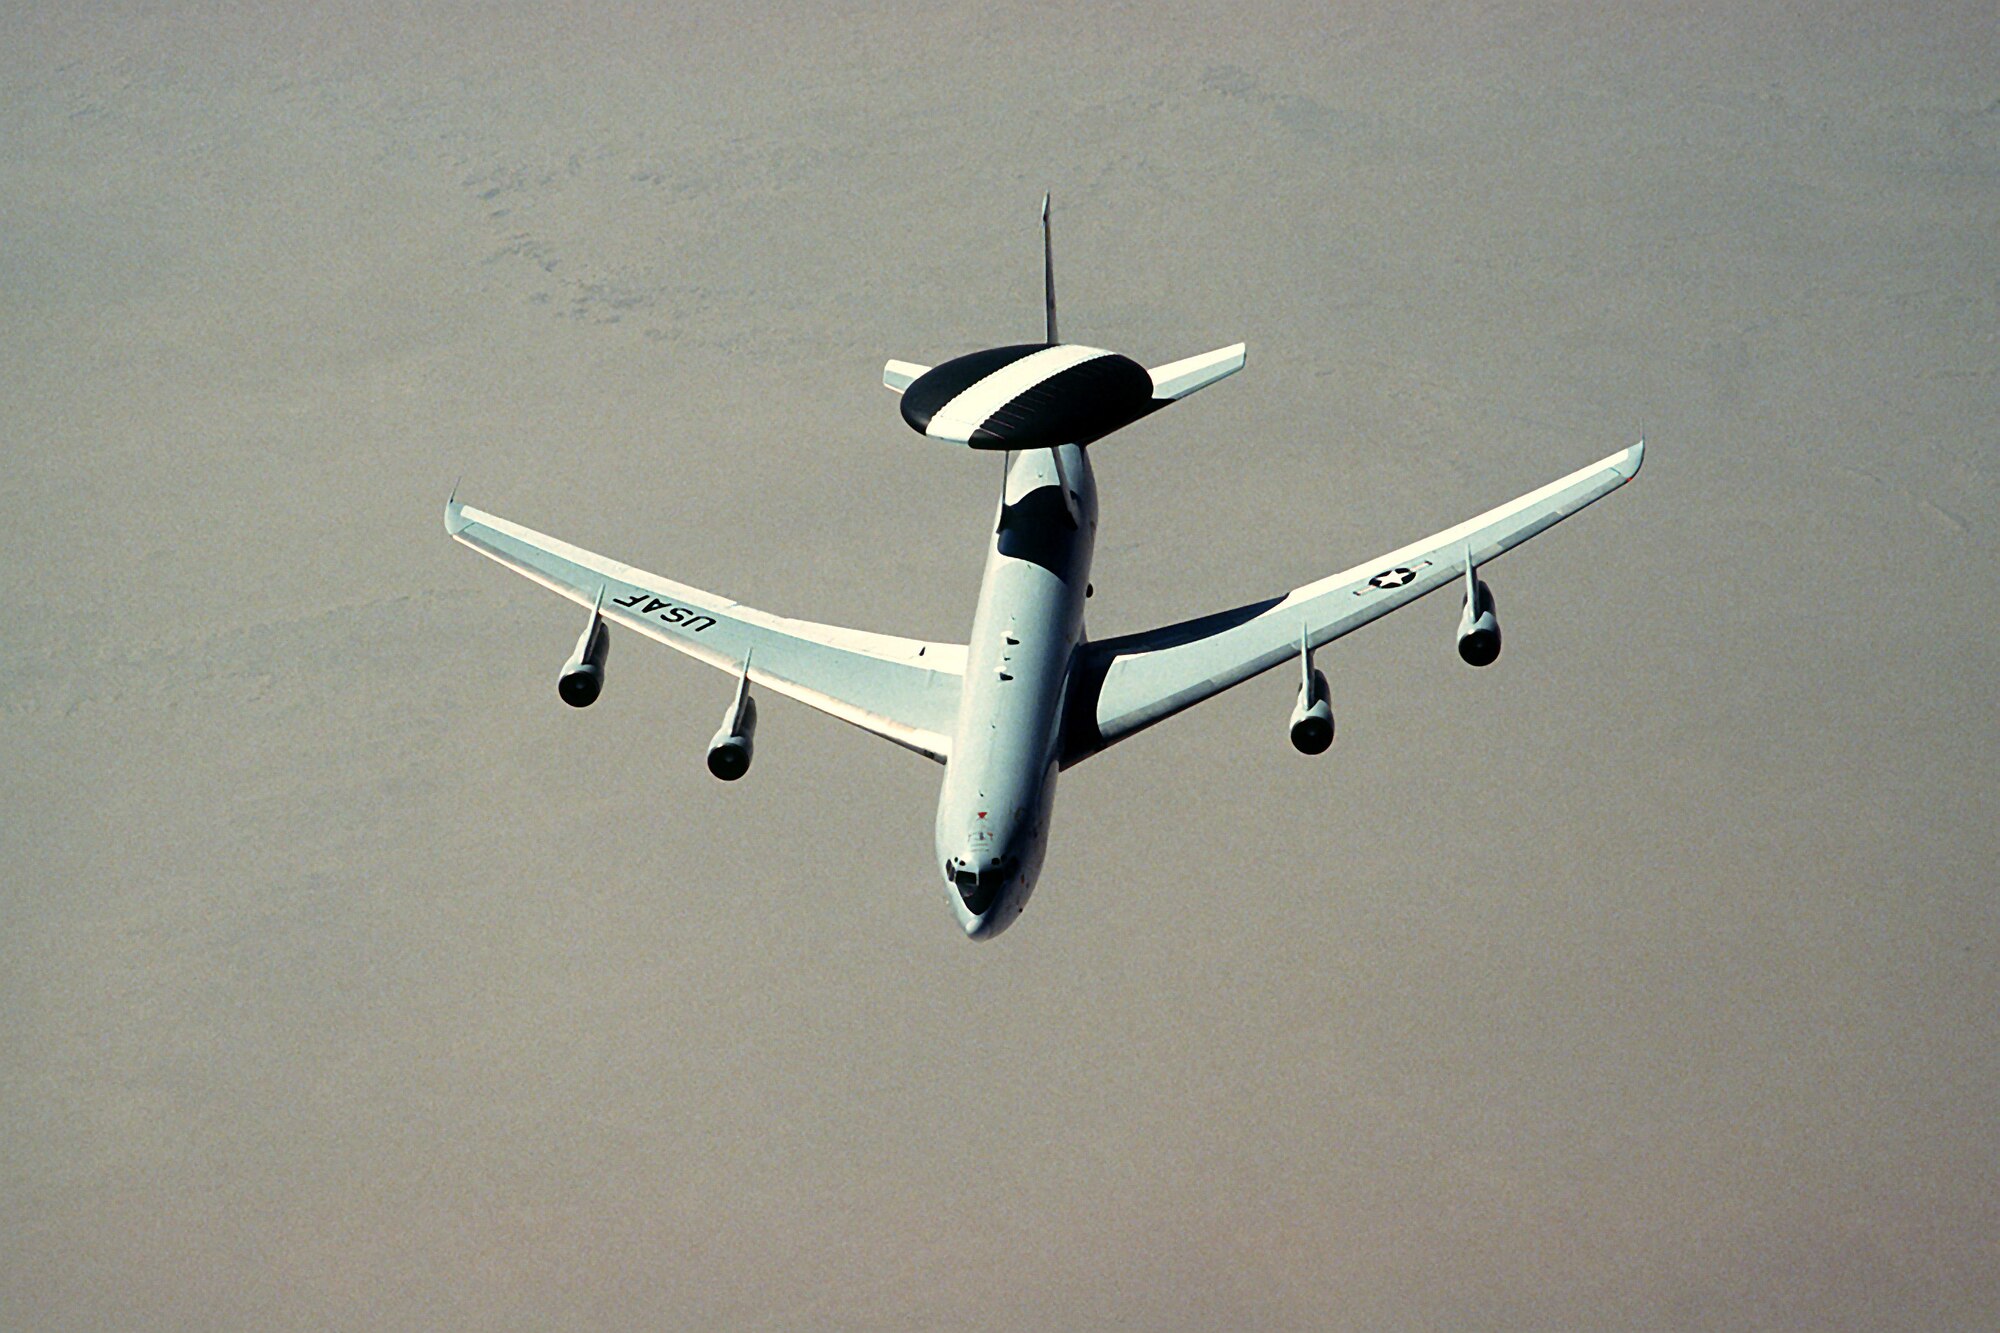 1990's -- An E-3 Sentry aircraft flies over the desert during Operation Desert Shield.